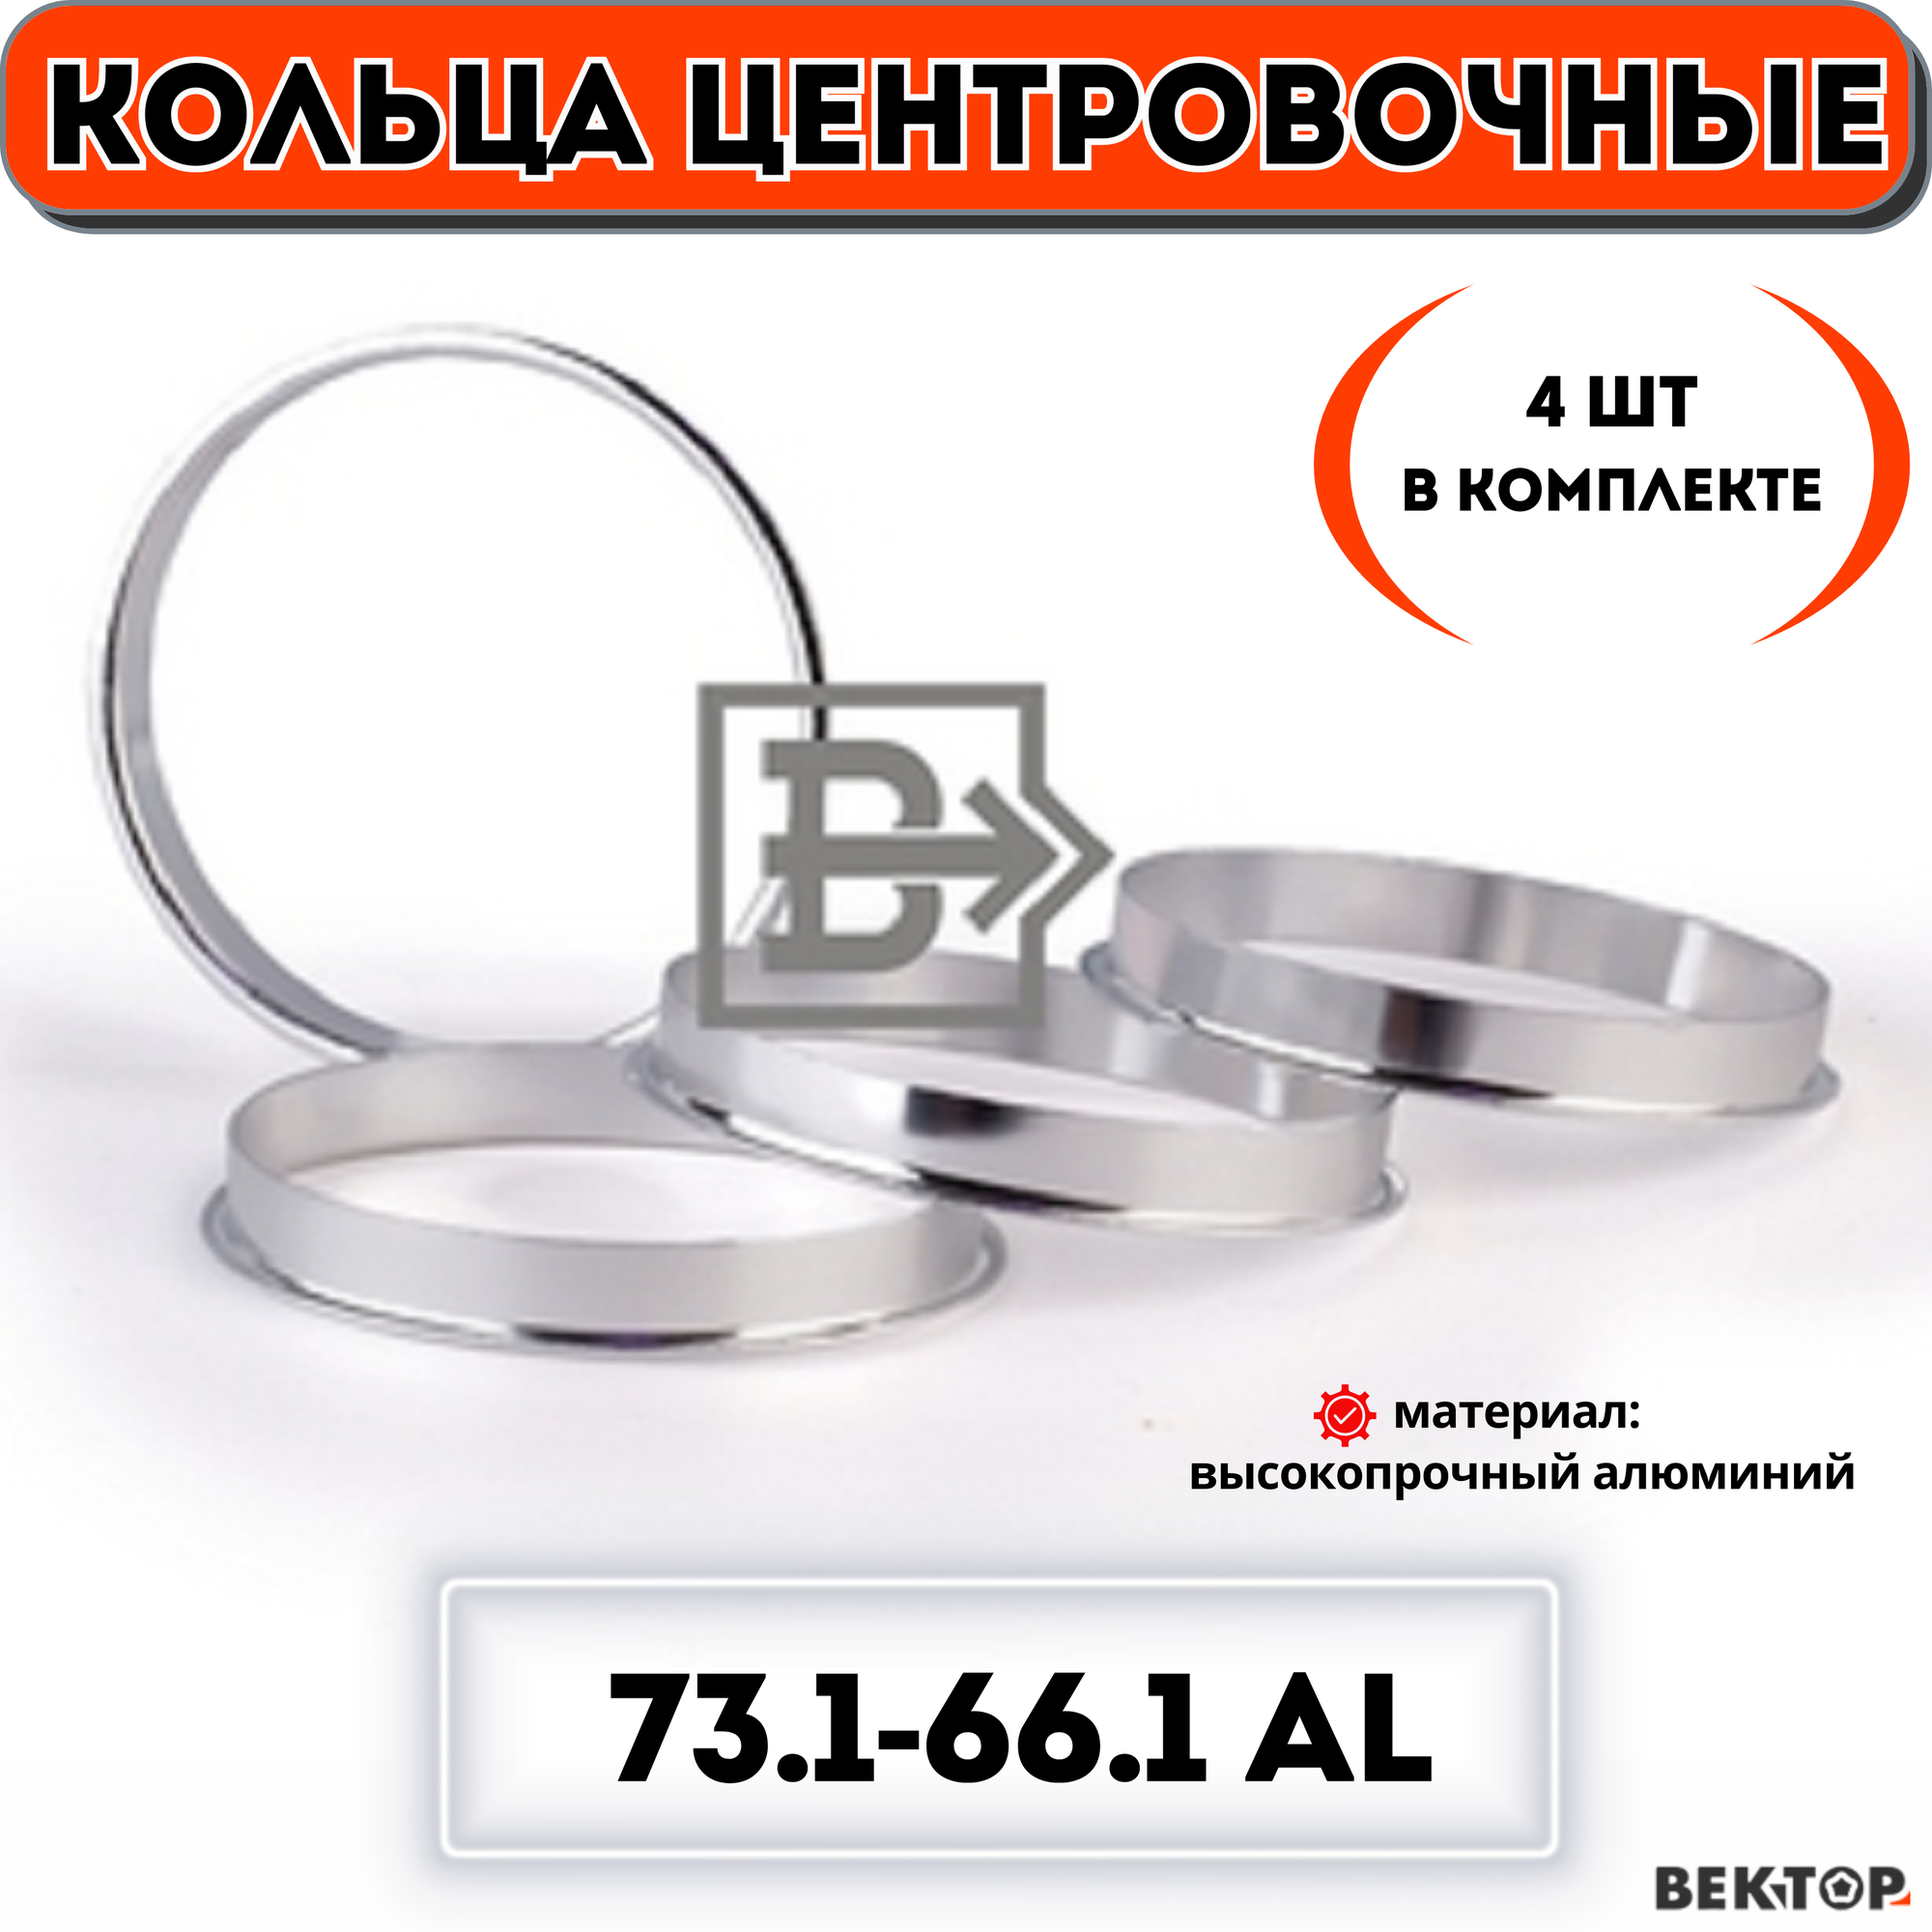 Кольца центровочные для автомобильных дисков 731-661 алюминий "вектор" (комплект 4 шт.)